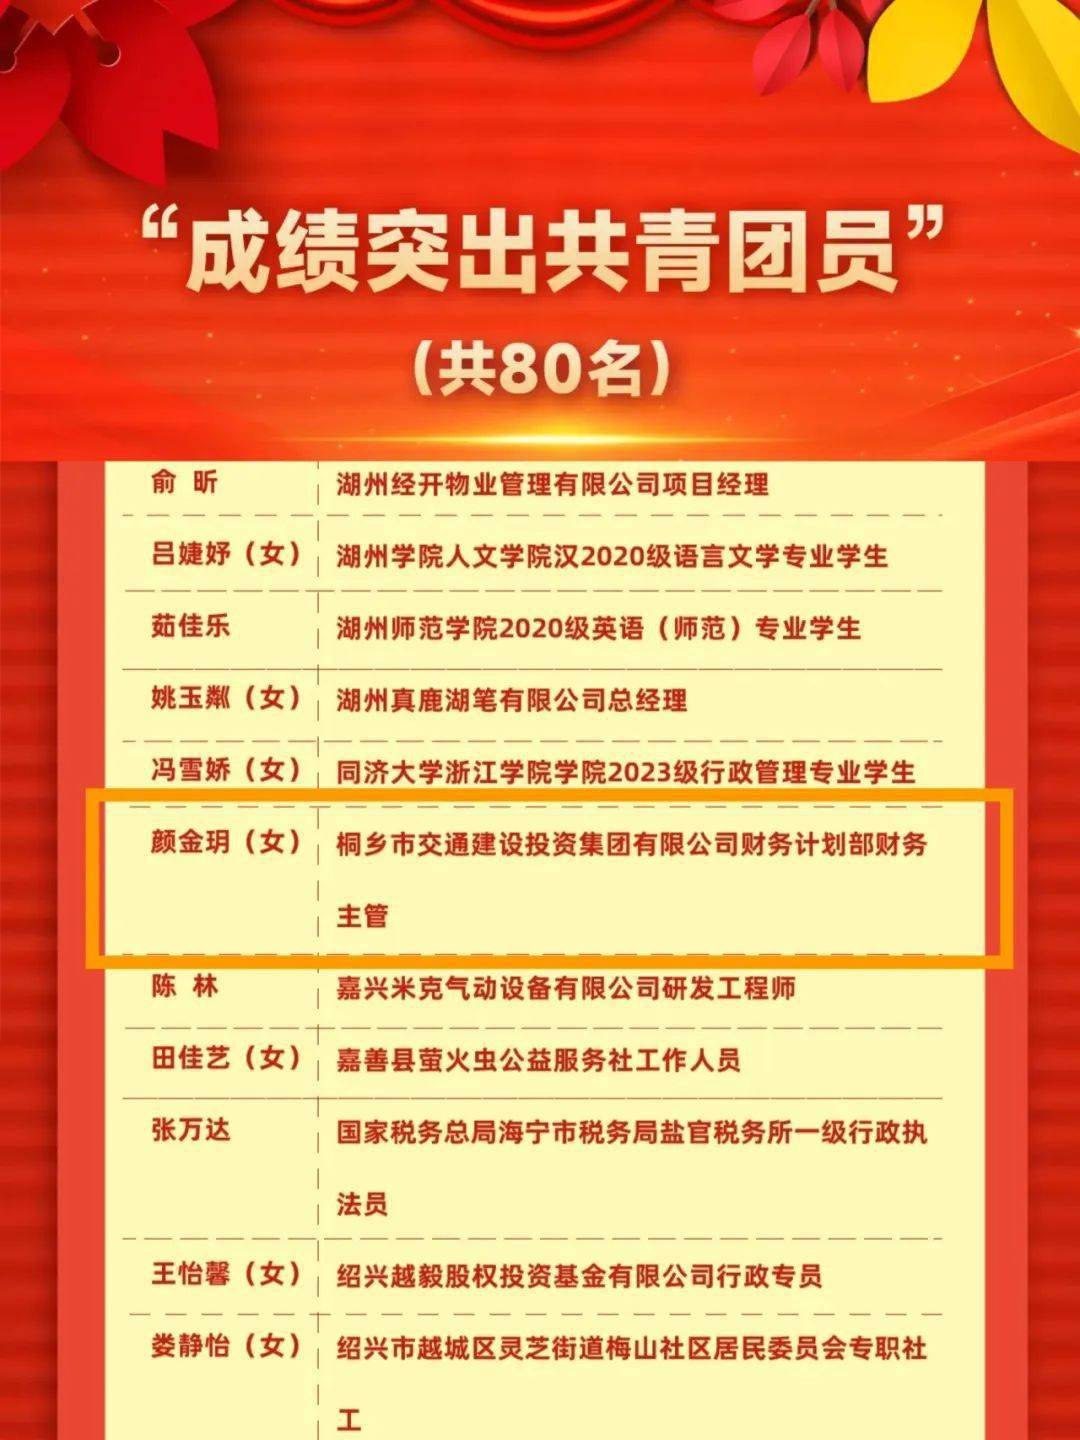 共青团浙江省委通报表扬了一批2023年浙江省共青团和青年工作成绩